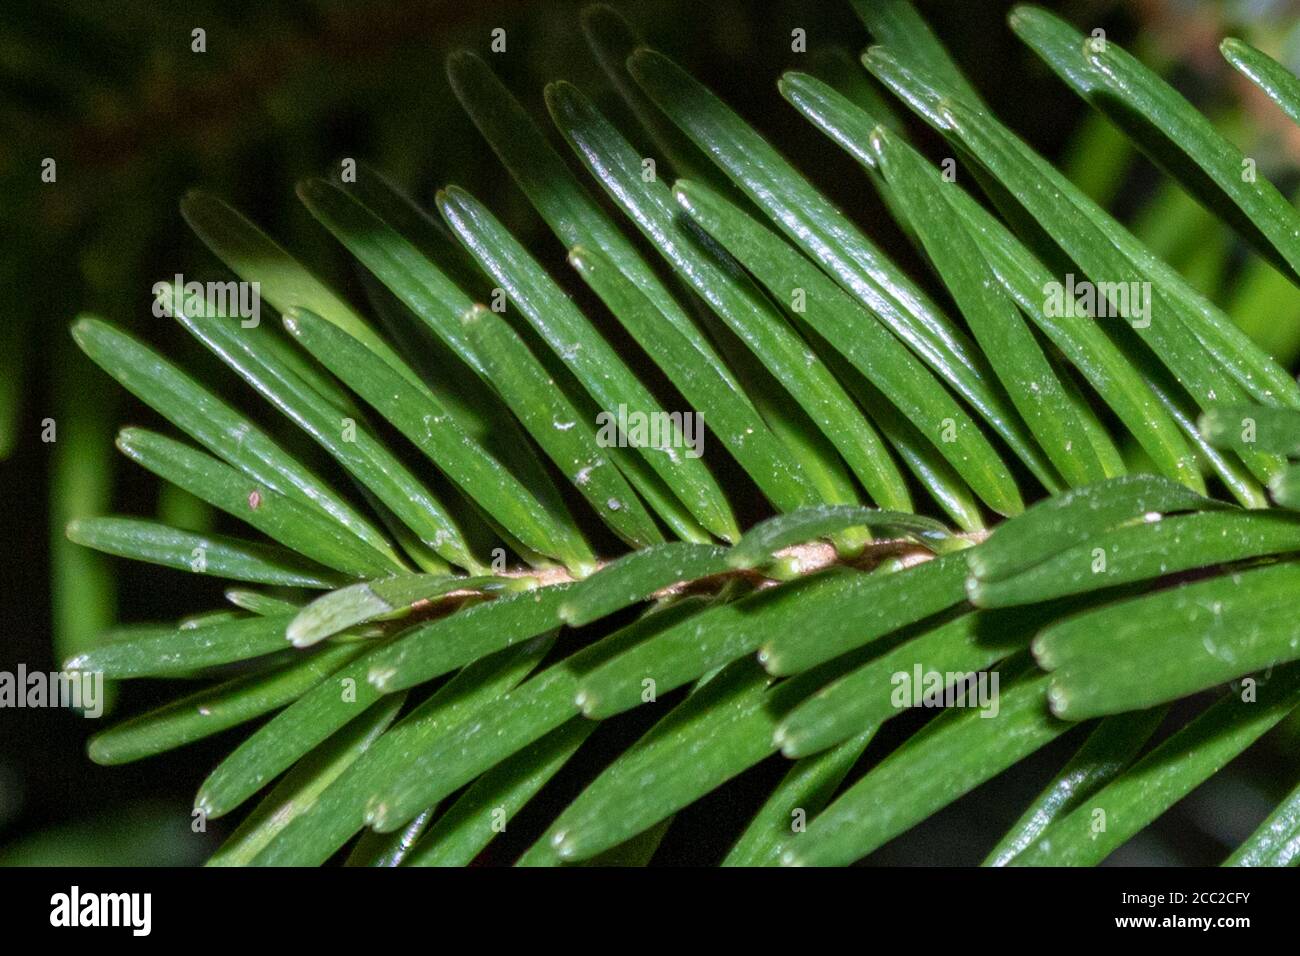 Closeup of balsam fir needles on a tree branch Stock Photo